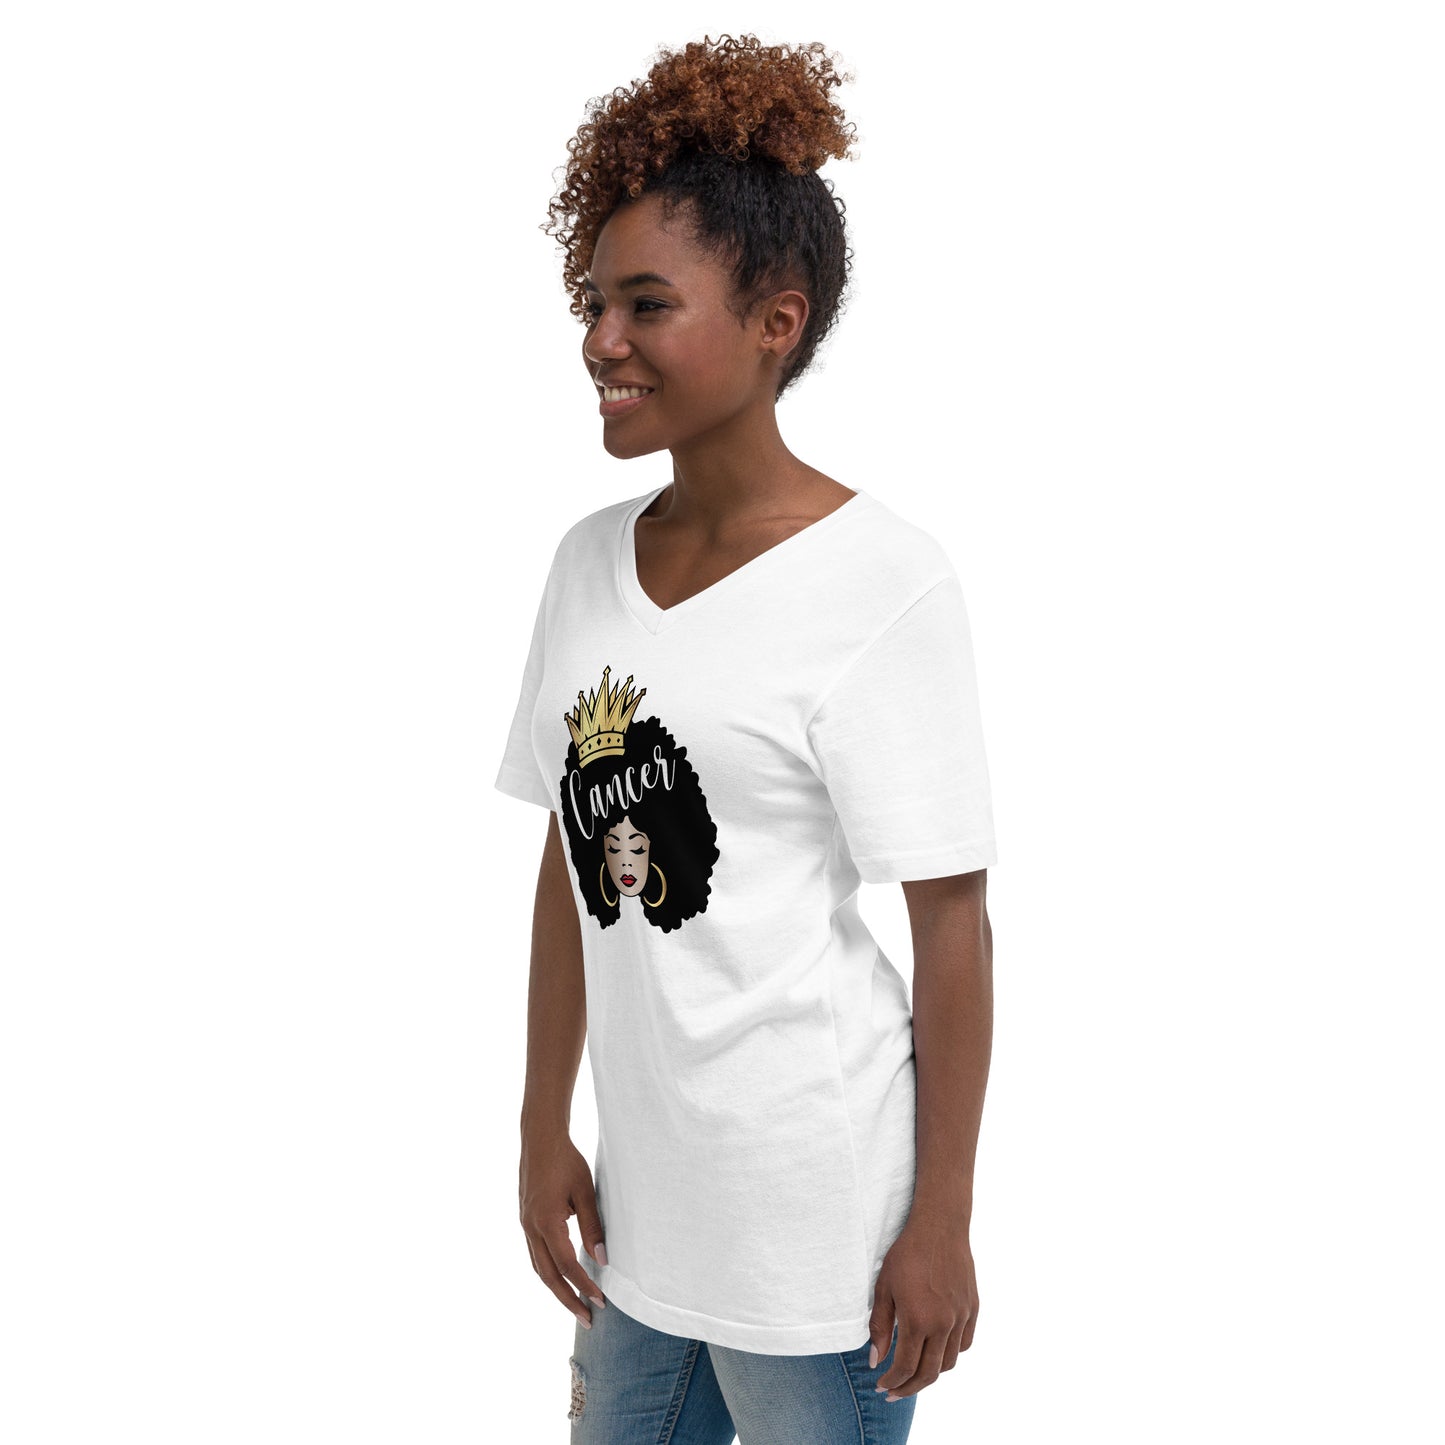 Women's Short Sleeve V-Neck T-Shirt - Cancer Afro Queen